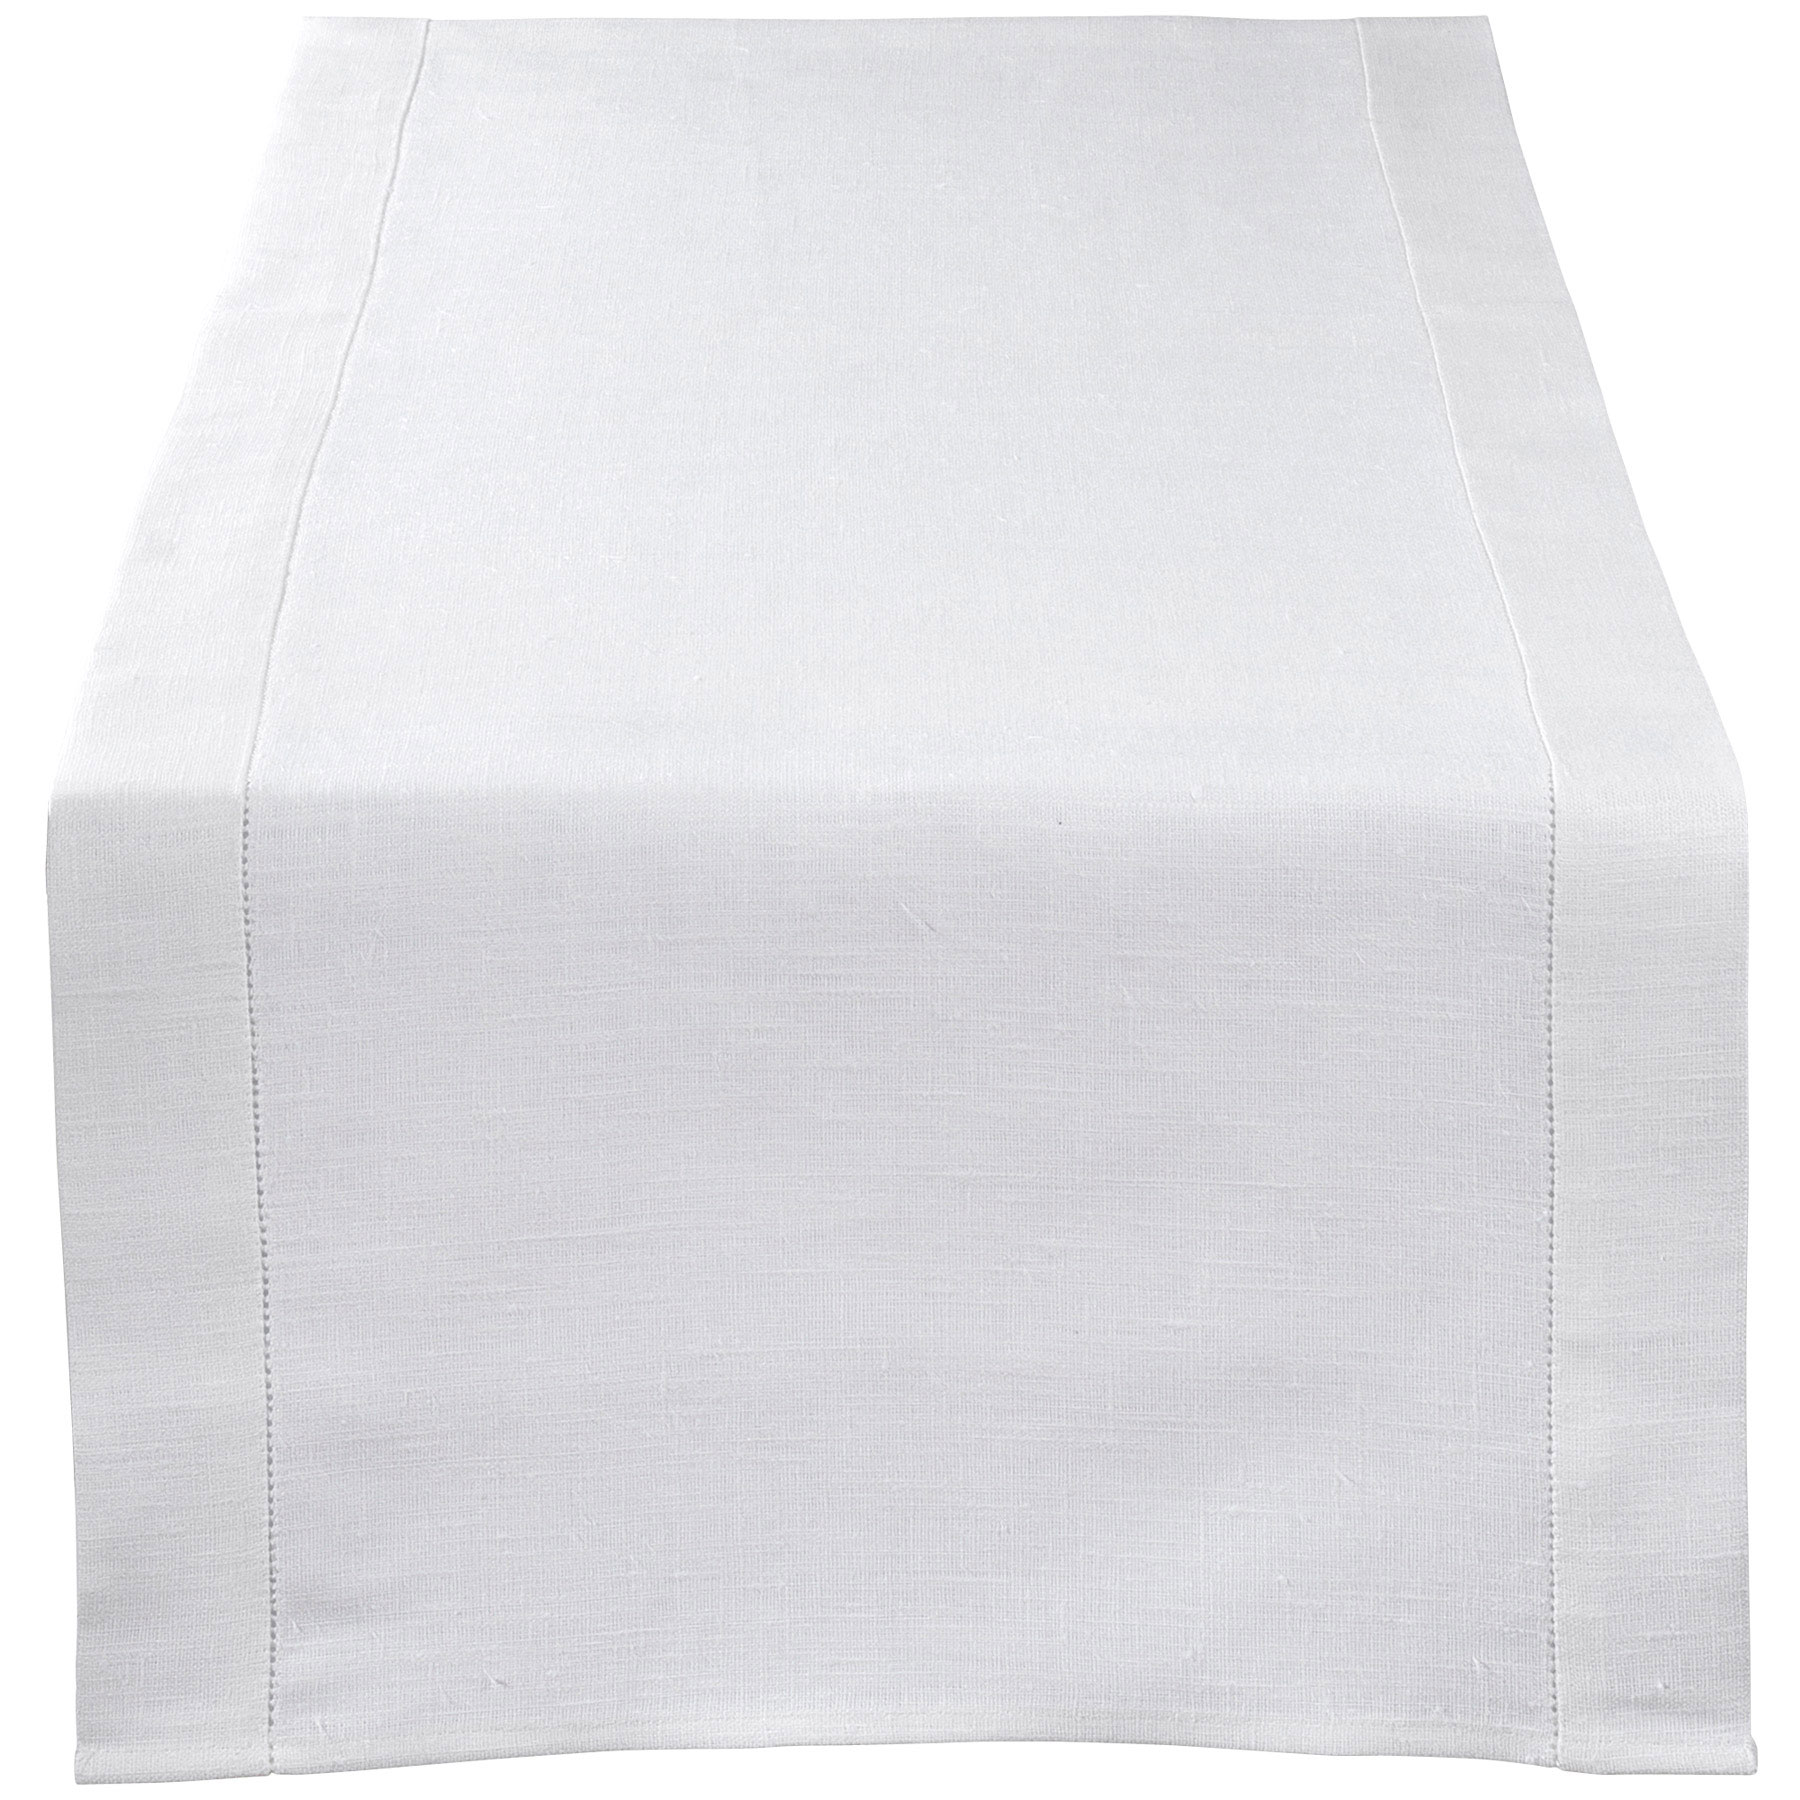 Table Runner White Zizi Linen Home Textiles